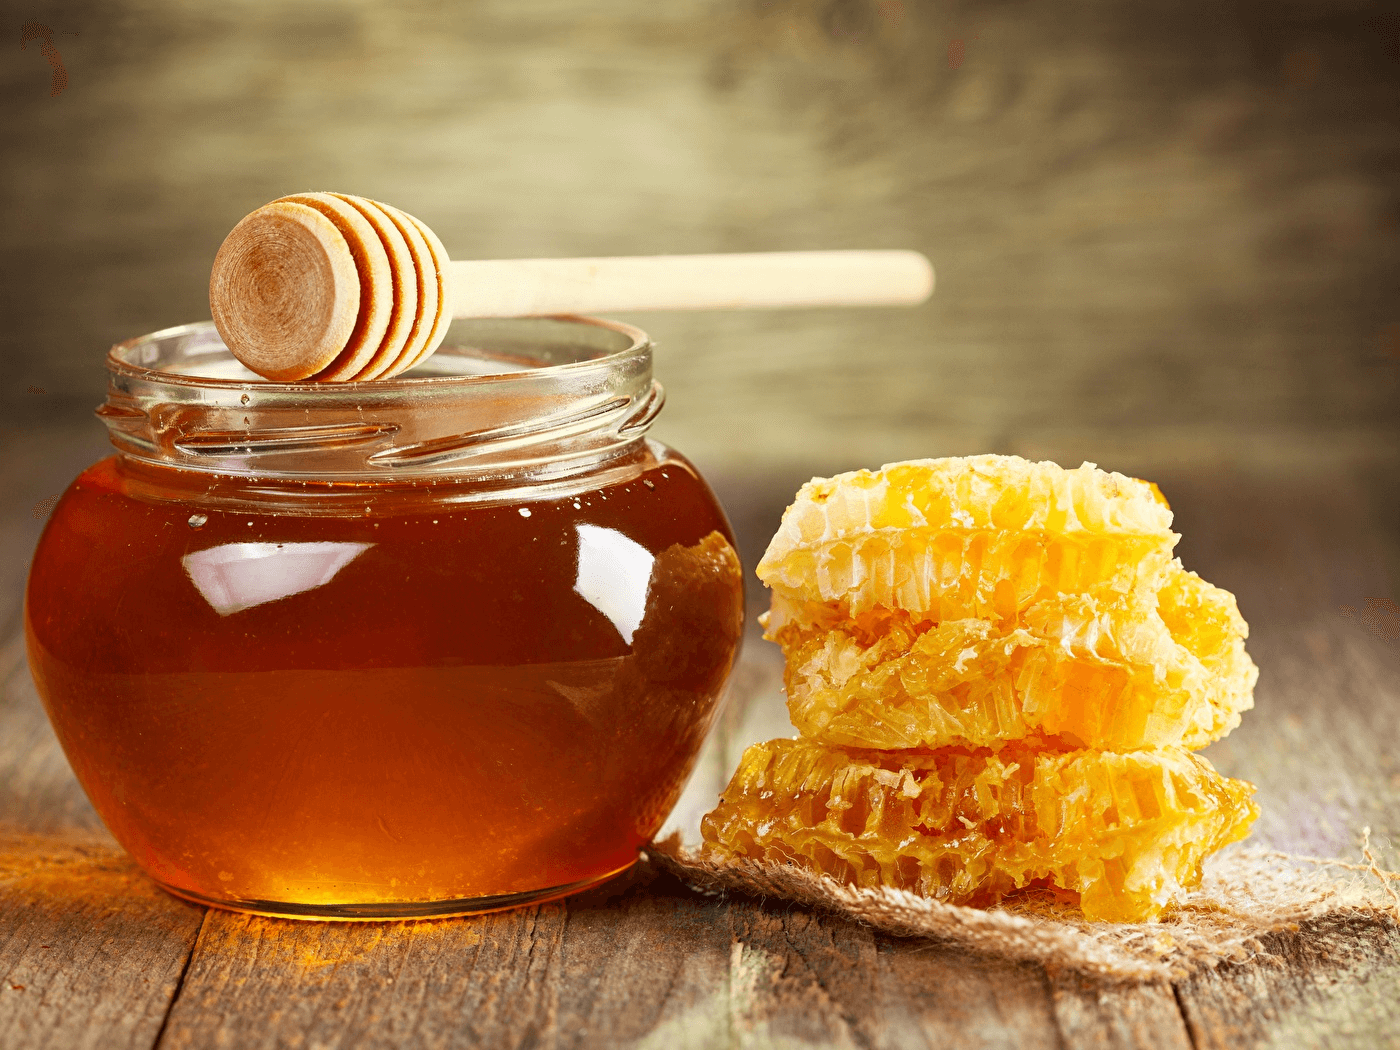 Купить мед в Москве по оптовой цене  — от 300 рублей за 600 г